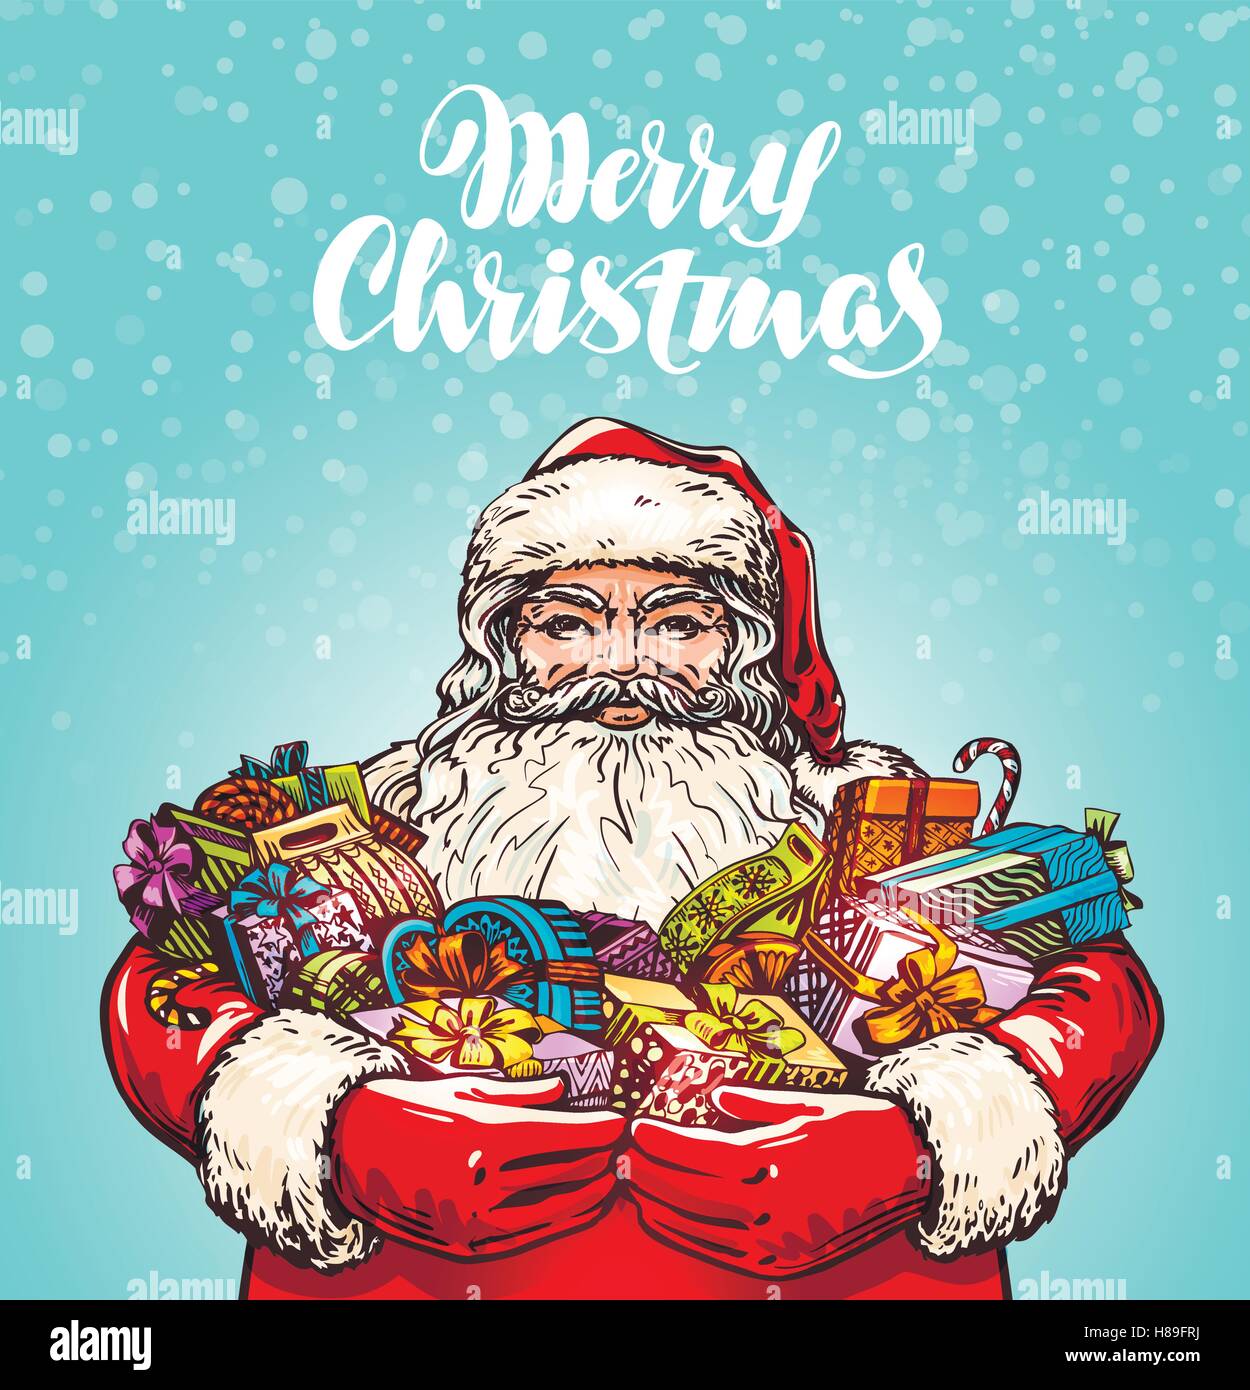 Frohe Weihnachten. Weihnachtsmann und Geschenke. Vektor-illustration Stock Vektor